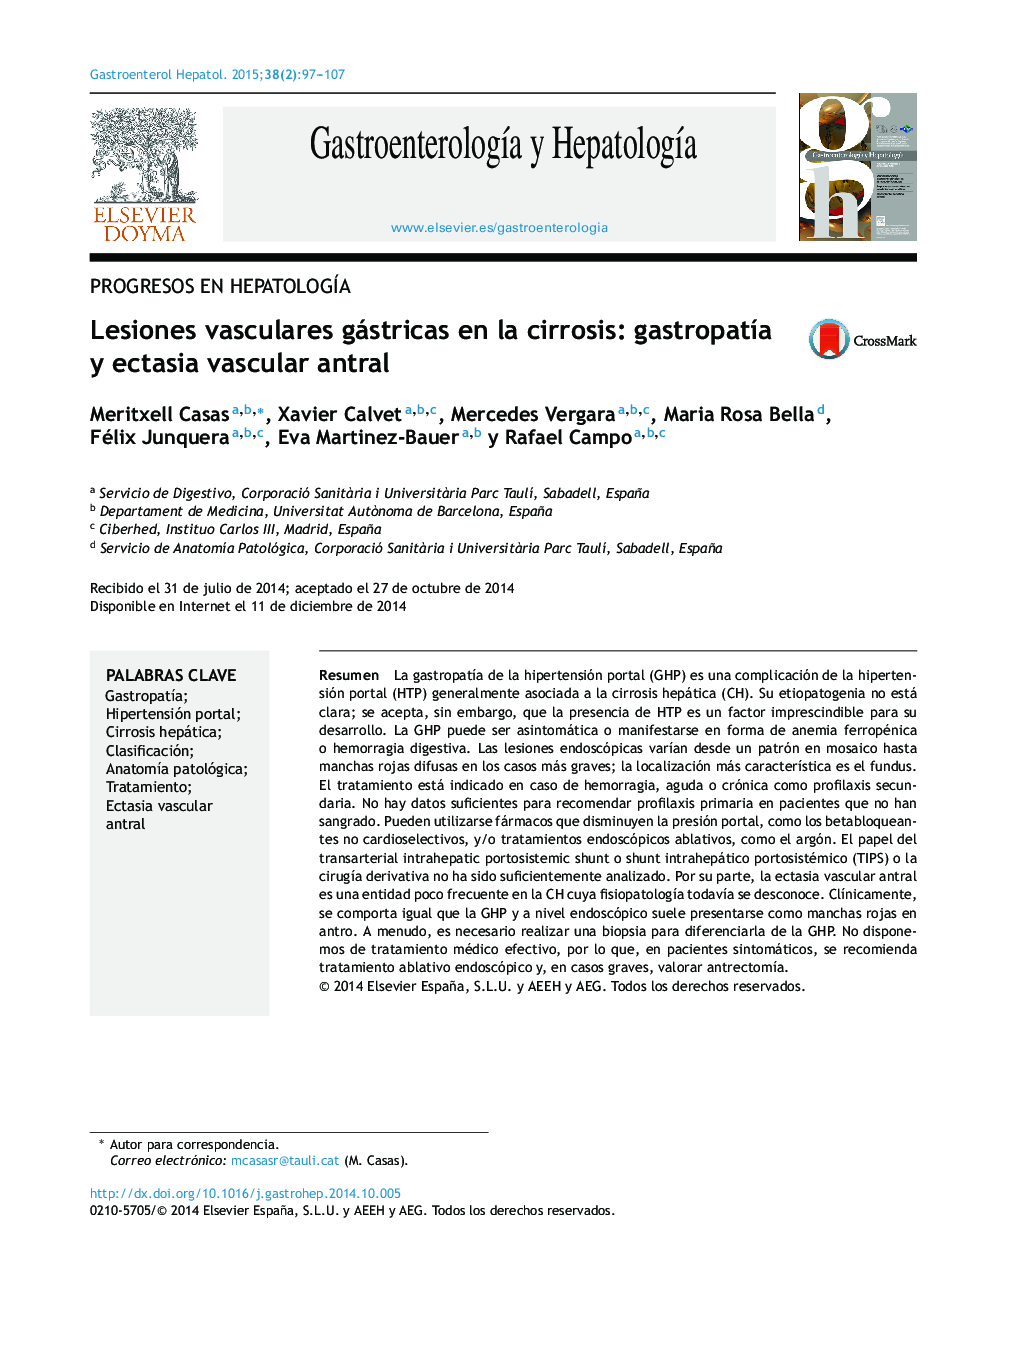 Lesiones vasculares gástricas en la cirrosis: gastropatÃ­a y ectasia vascular antral